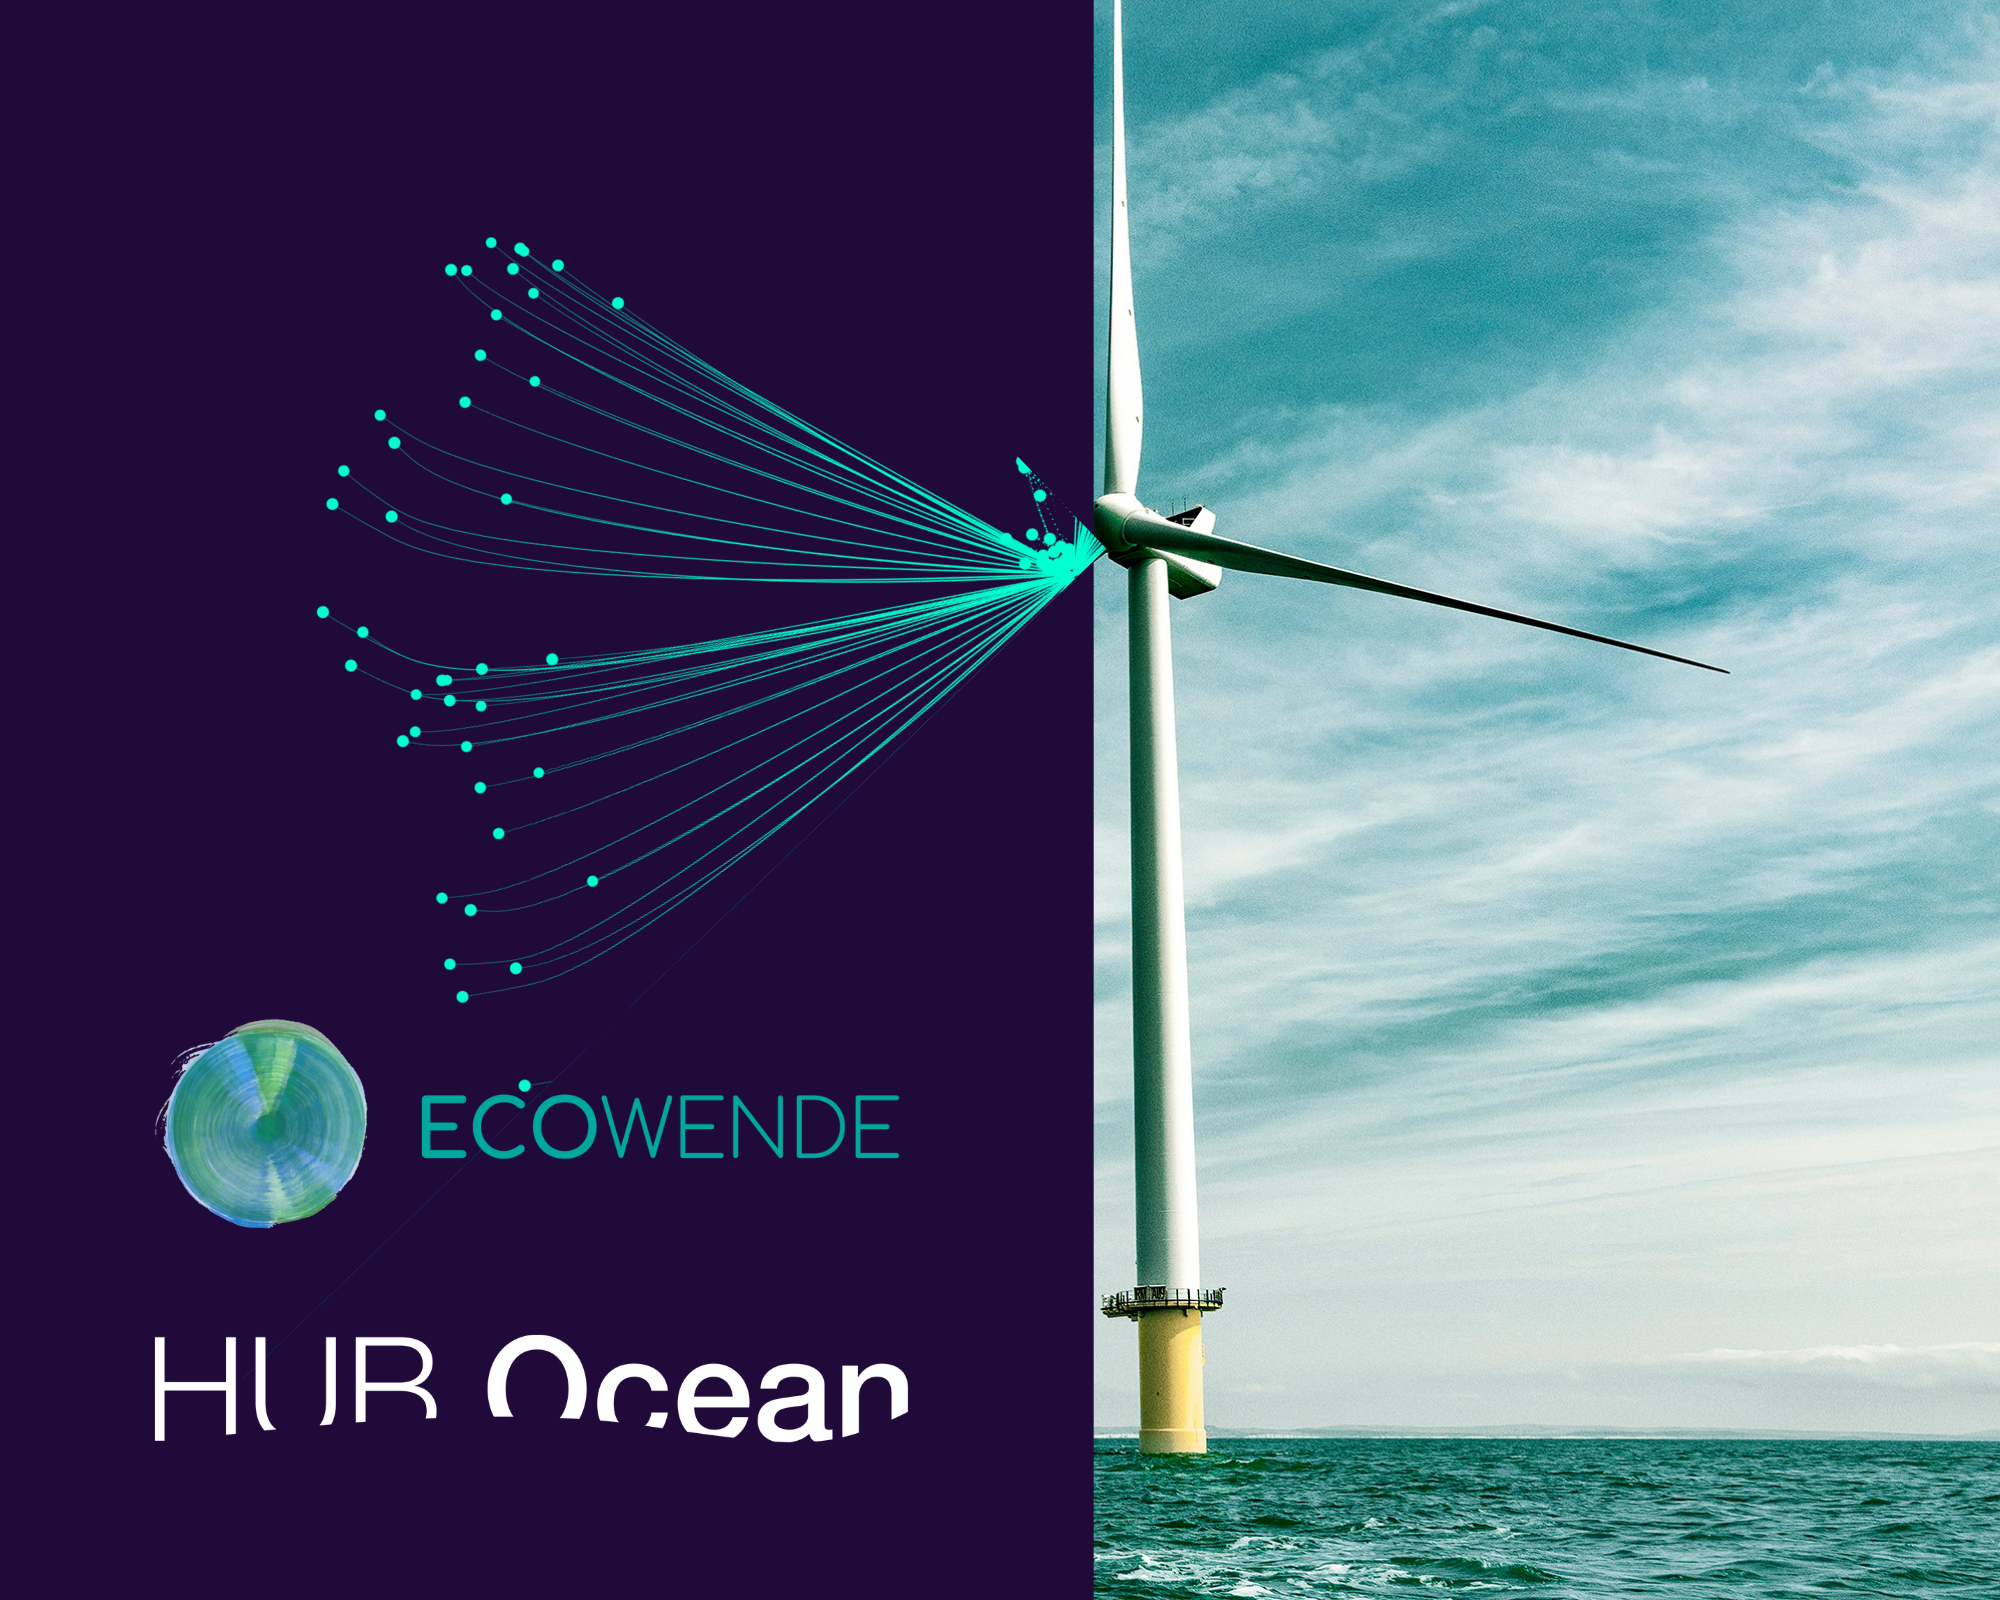 Windturbine met logo Ecowende and HUB Ocean